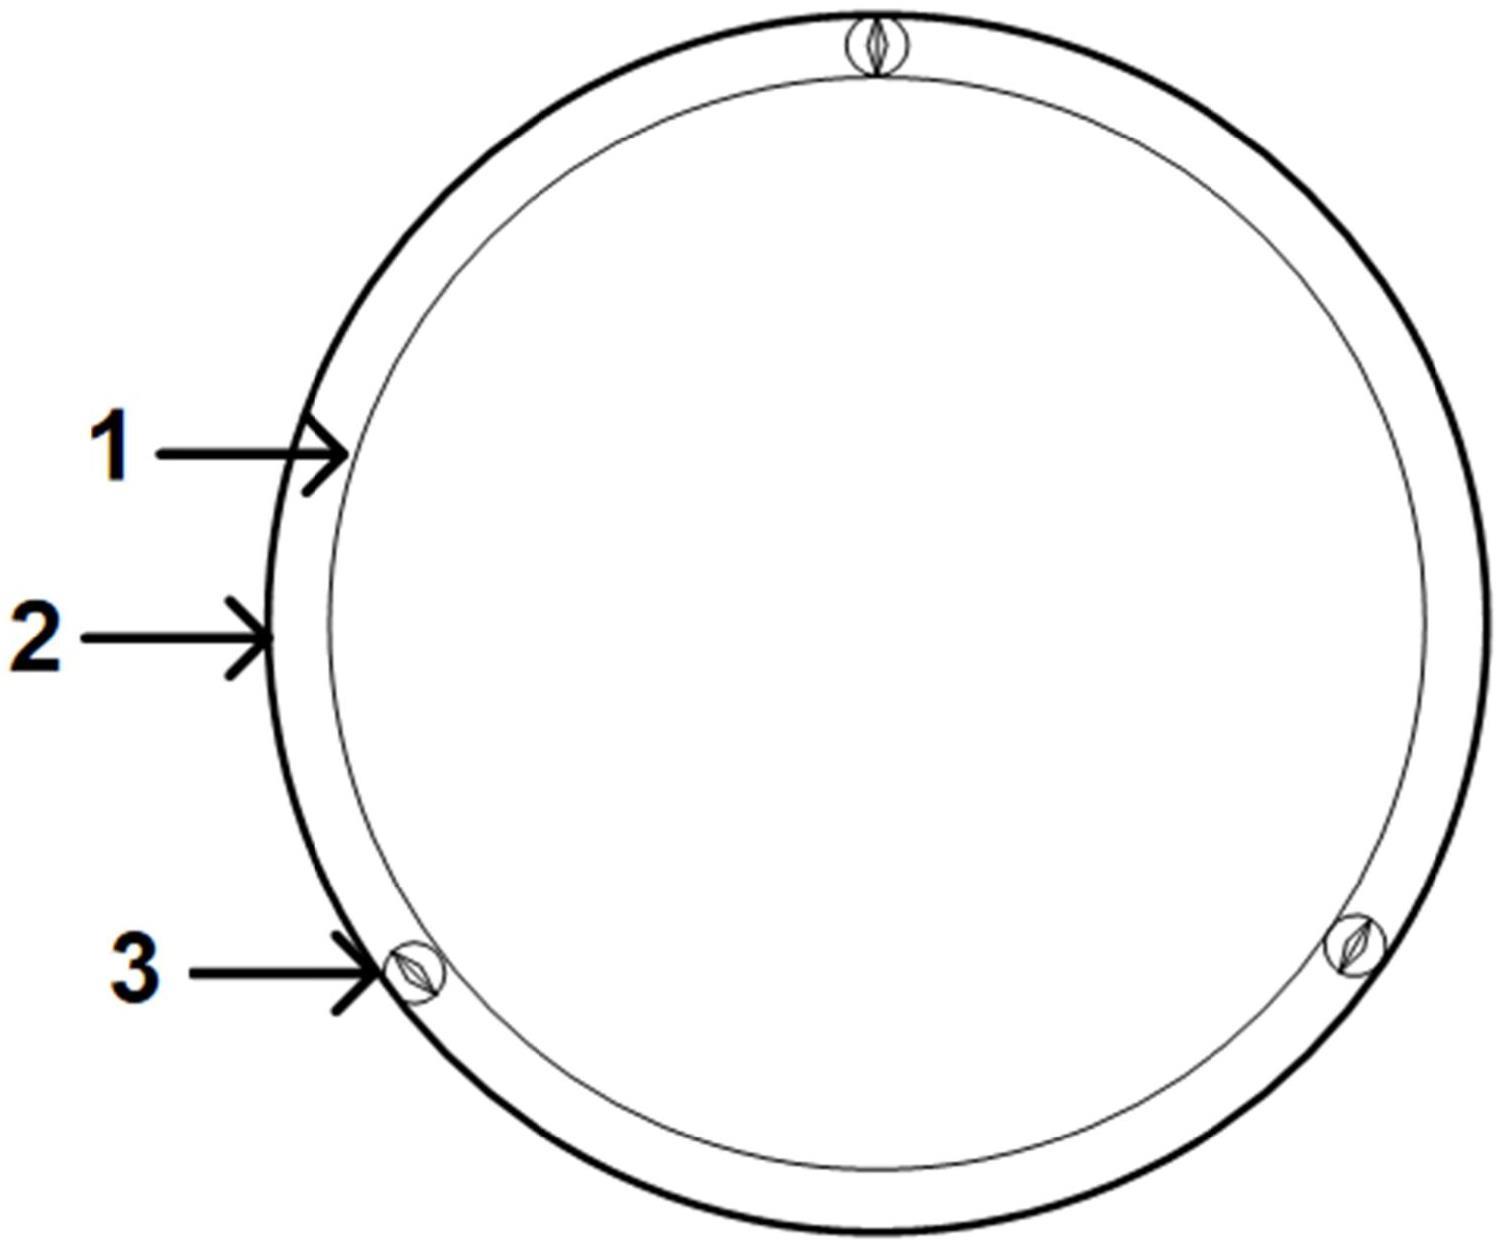 兼容多种晶圆破空时偏移的晶圆吸盘结构的制作方法